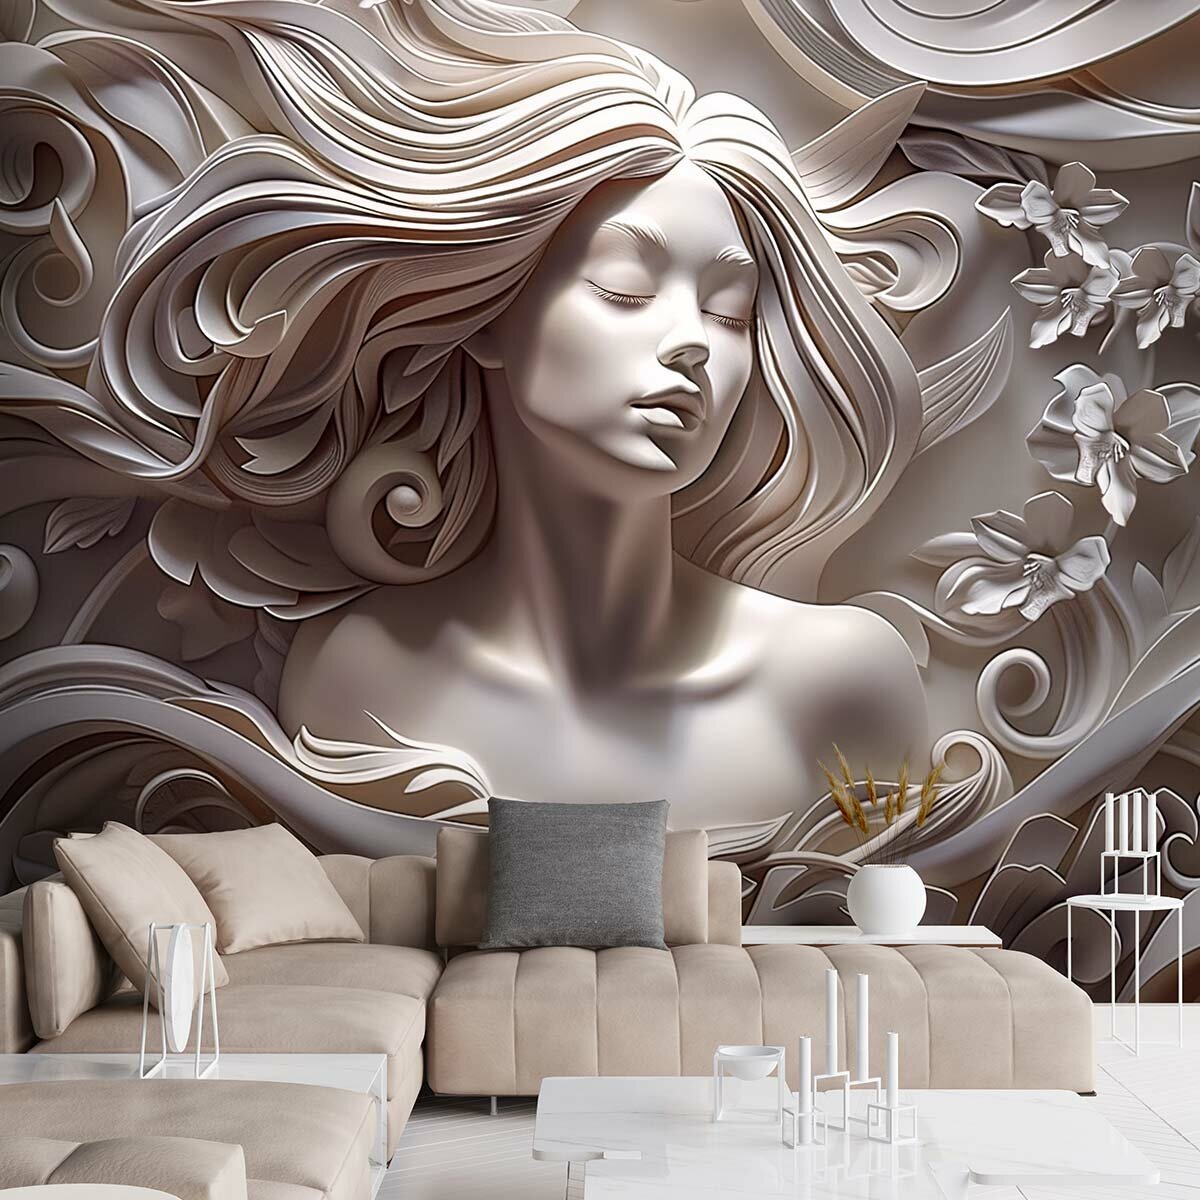 Фотообои 3D флизелиновые с виниловым покрытием VEROL "Девушка барельеф" 300х283 см моющиеся обои на стену декор для дома